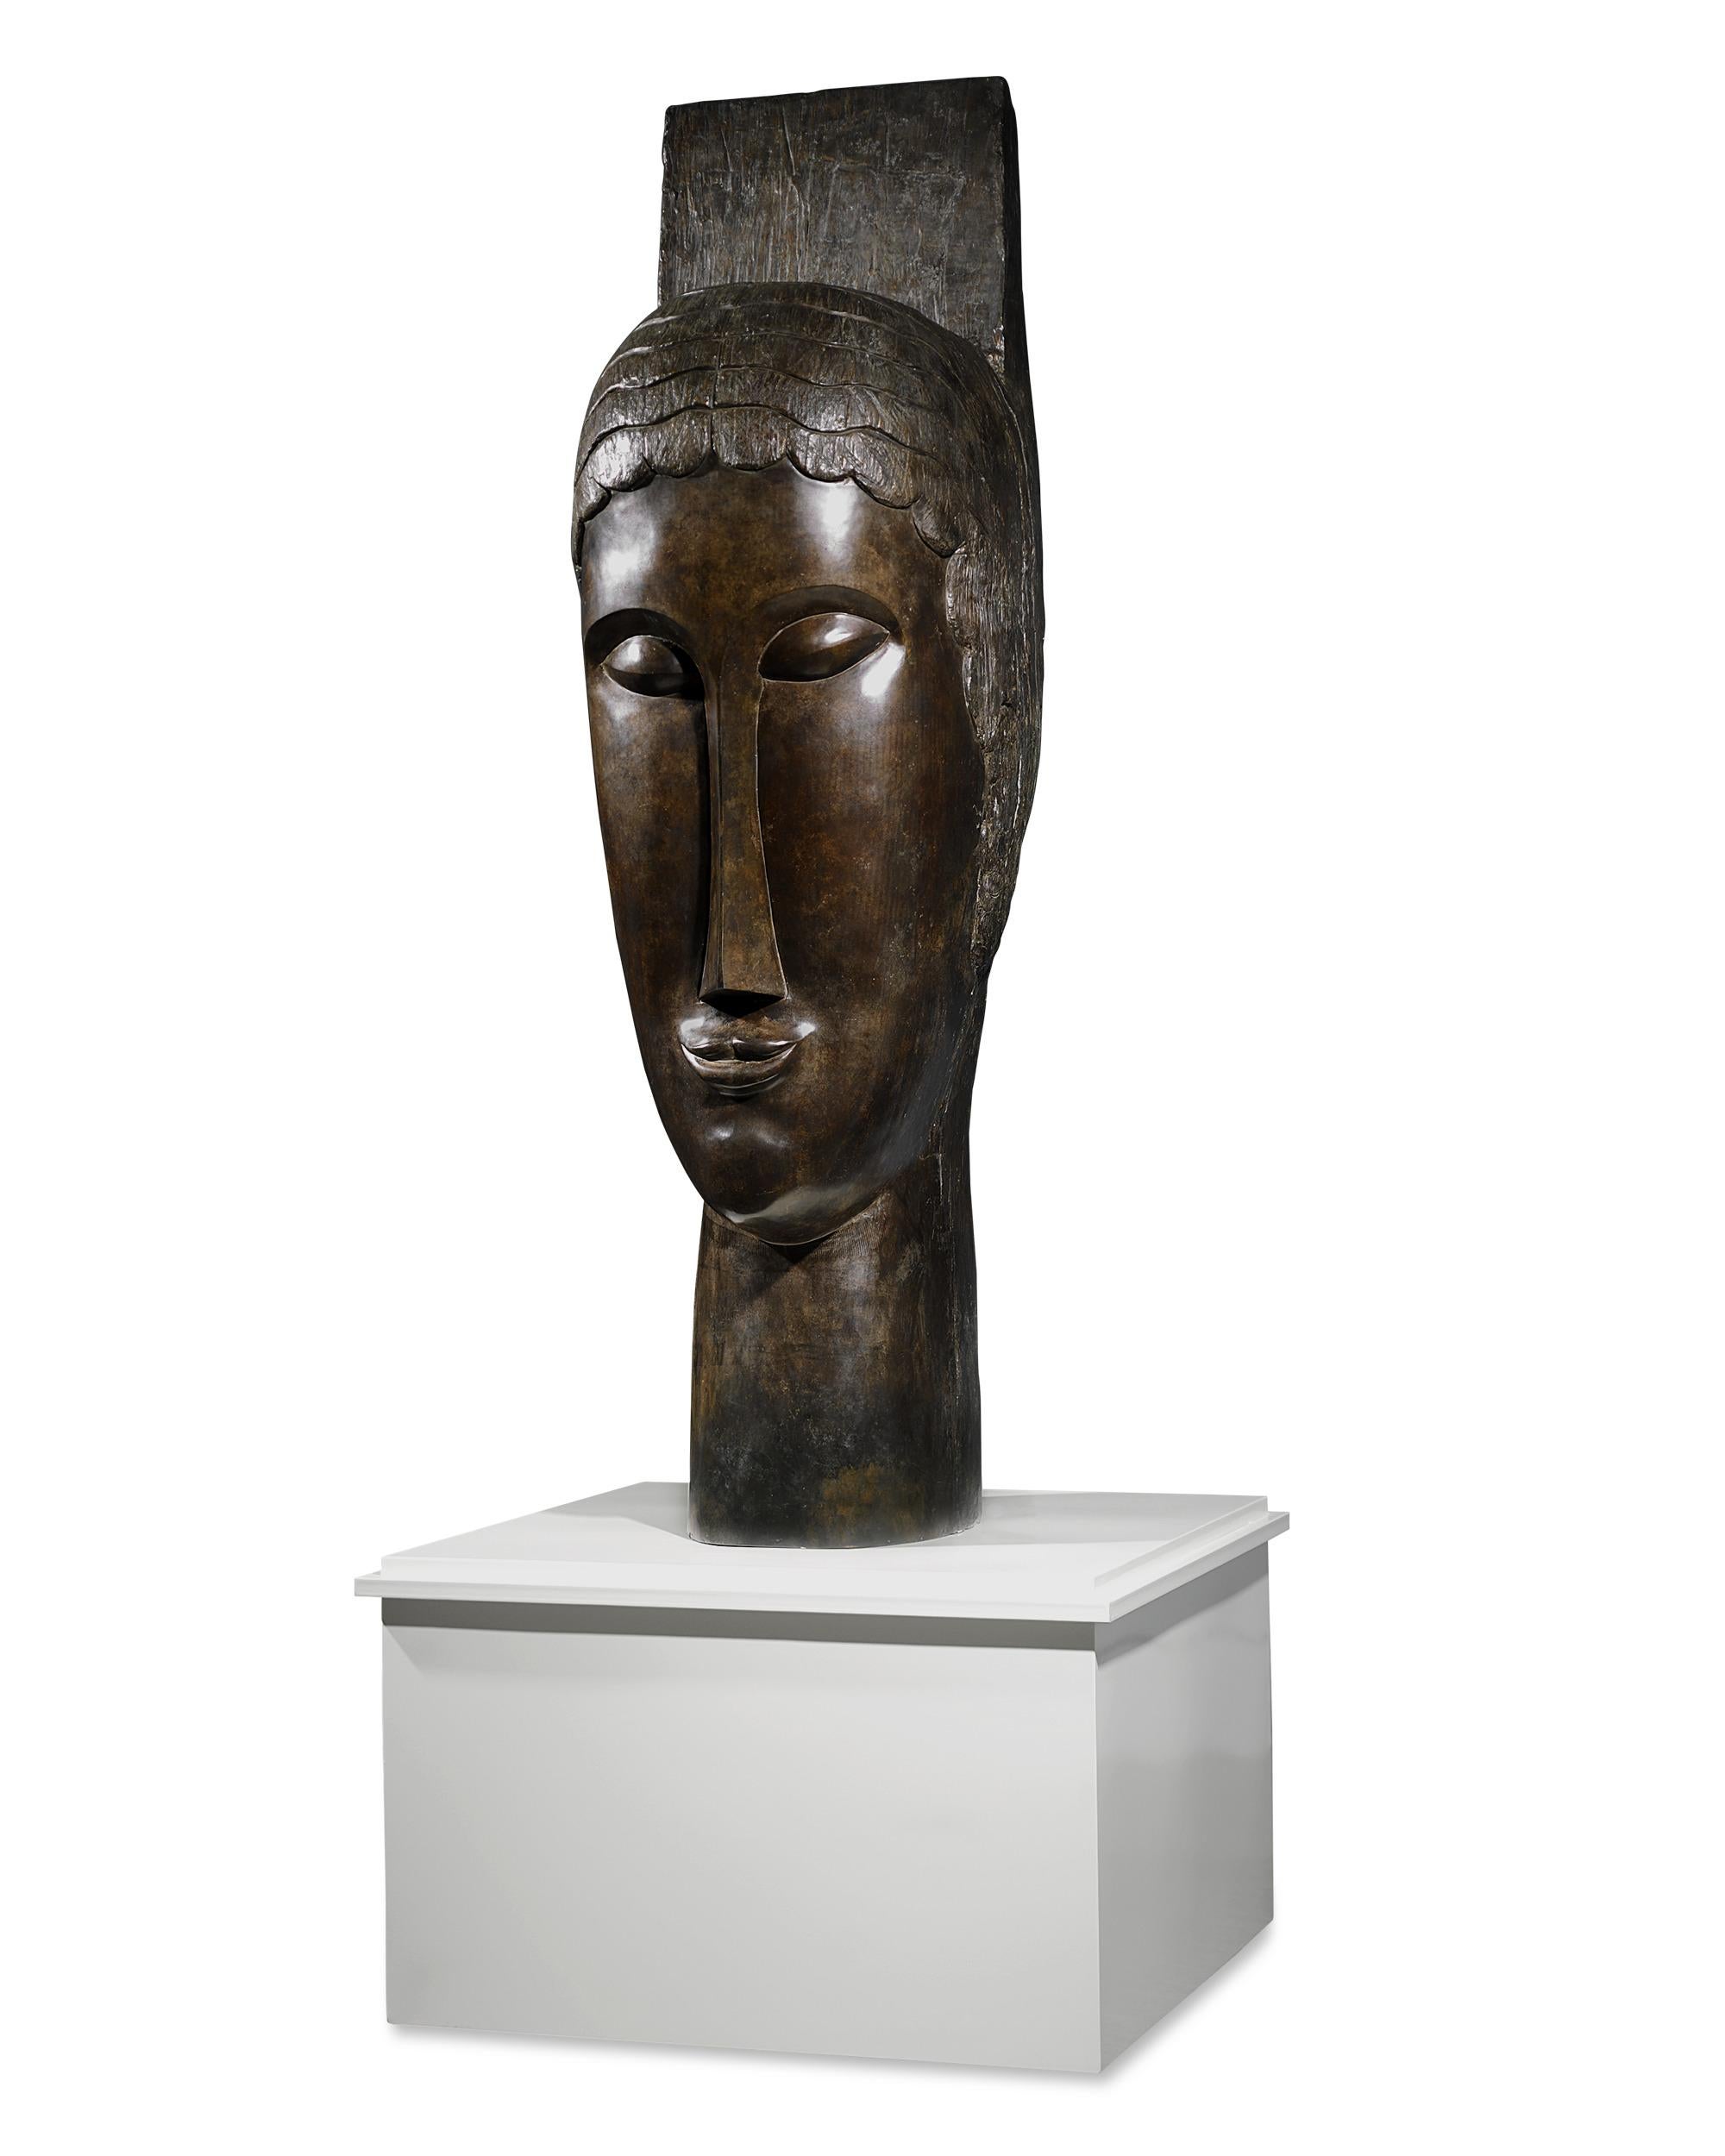 Tête de cariatide Head of Caryatid - Gold Figurative Sculpture by Amedeo Modigliani